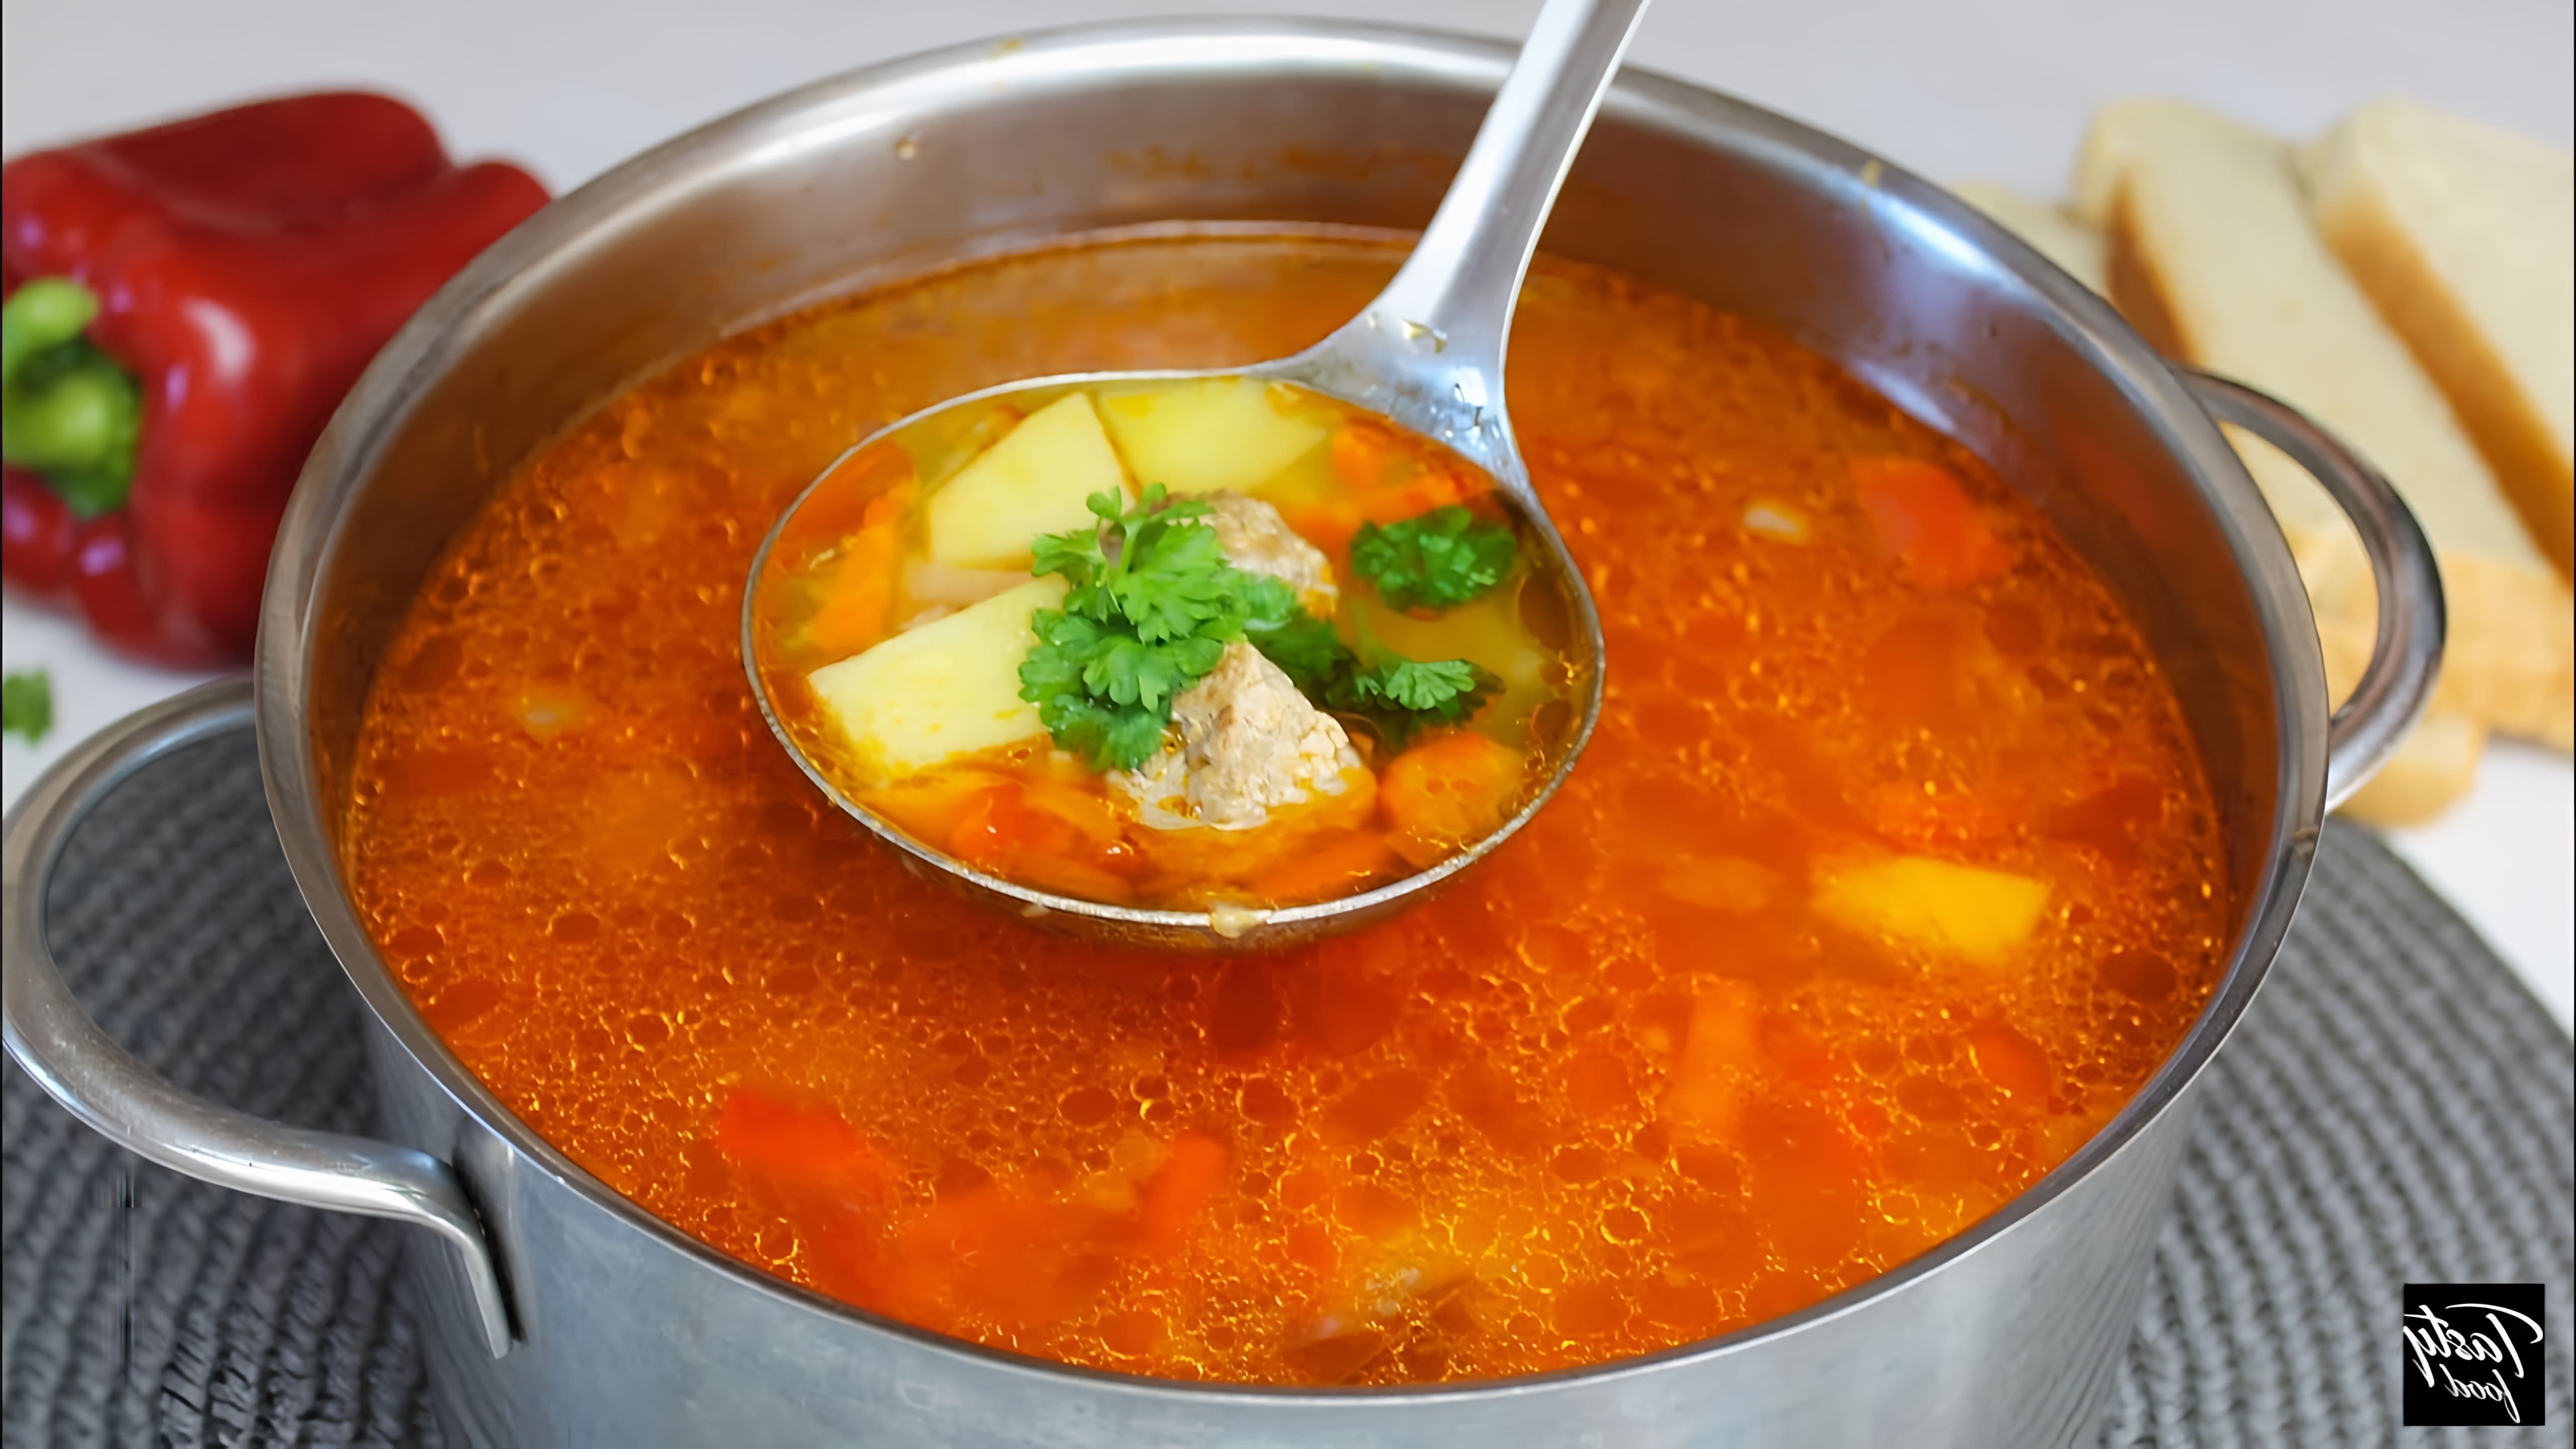 В этом видео демонстрируется рецепт приготовления вкусного супа с фрикадельками